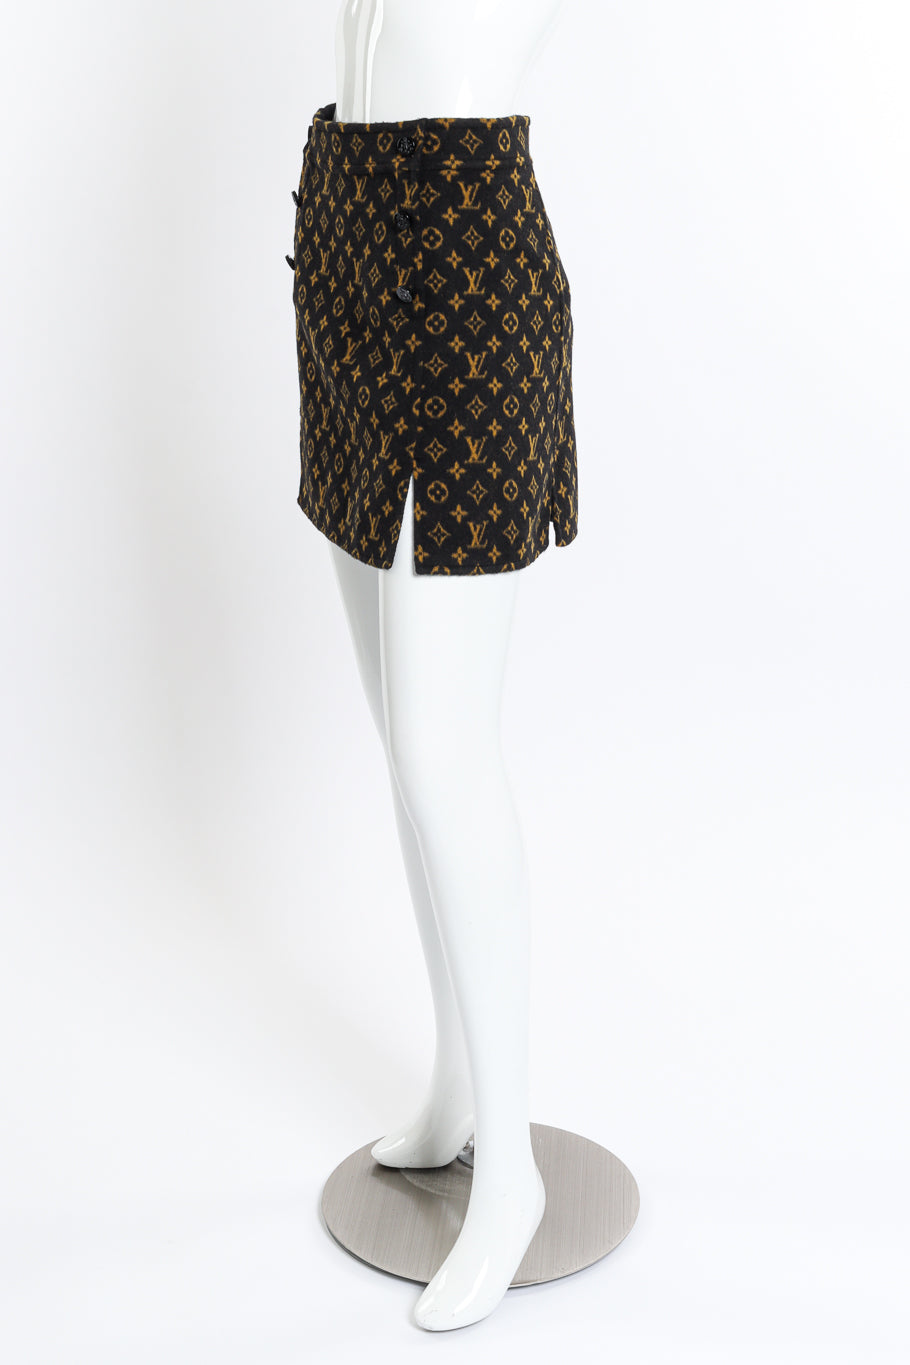 Louis Vuitton Monogram Slit Skirt side on mannequin @recess la